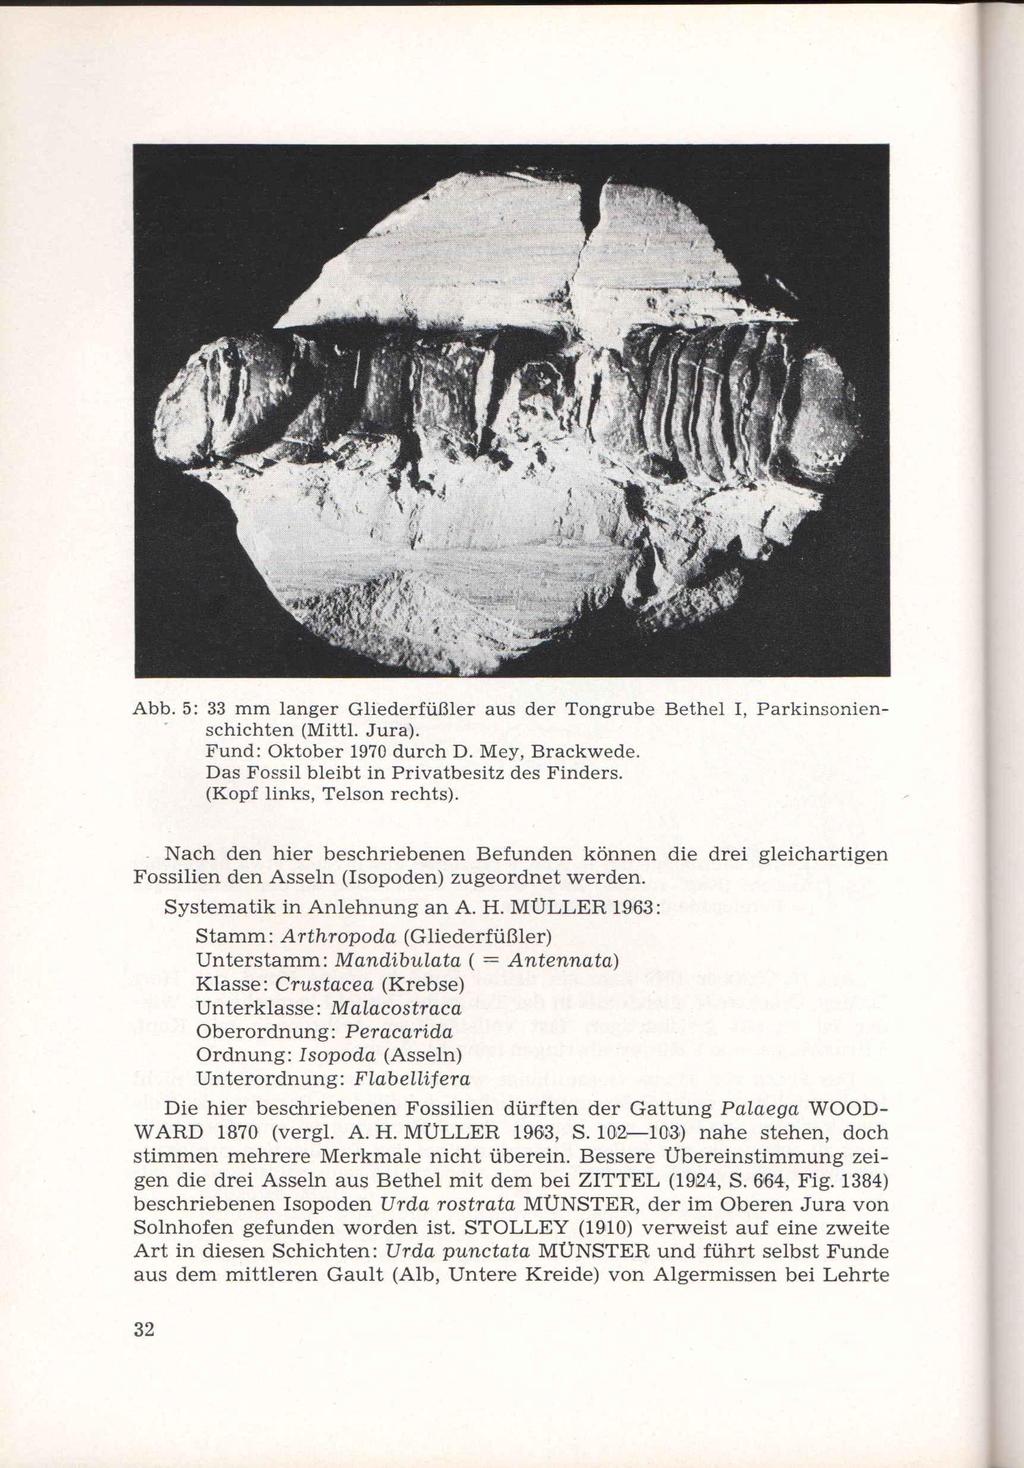 Abb. 5: 33 mm langer Gliederfüßler aus der Tongrube Bethel I, Parkinsonienschichten (Mittl. Jura). Fund: Oktober 1970 durch D. Mey, Brackwede. Das Fossil bleibt in Privatbesitz des Finders.